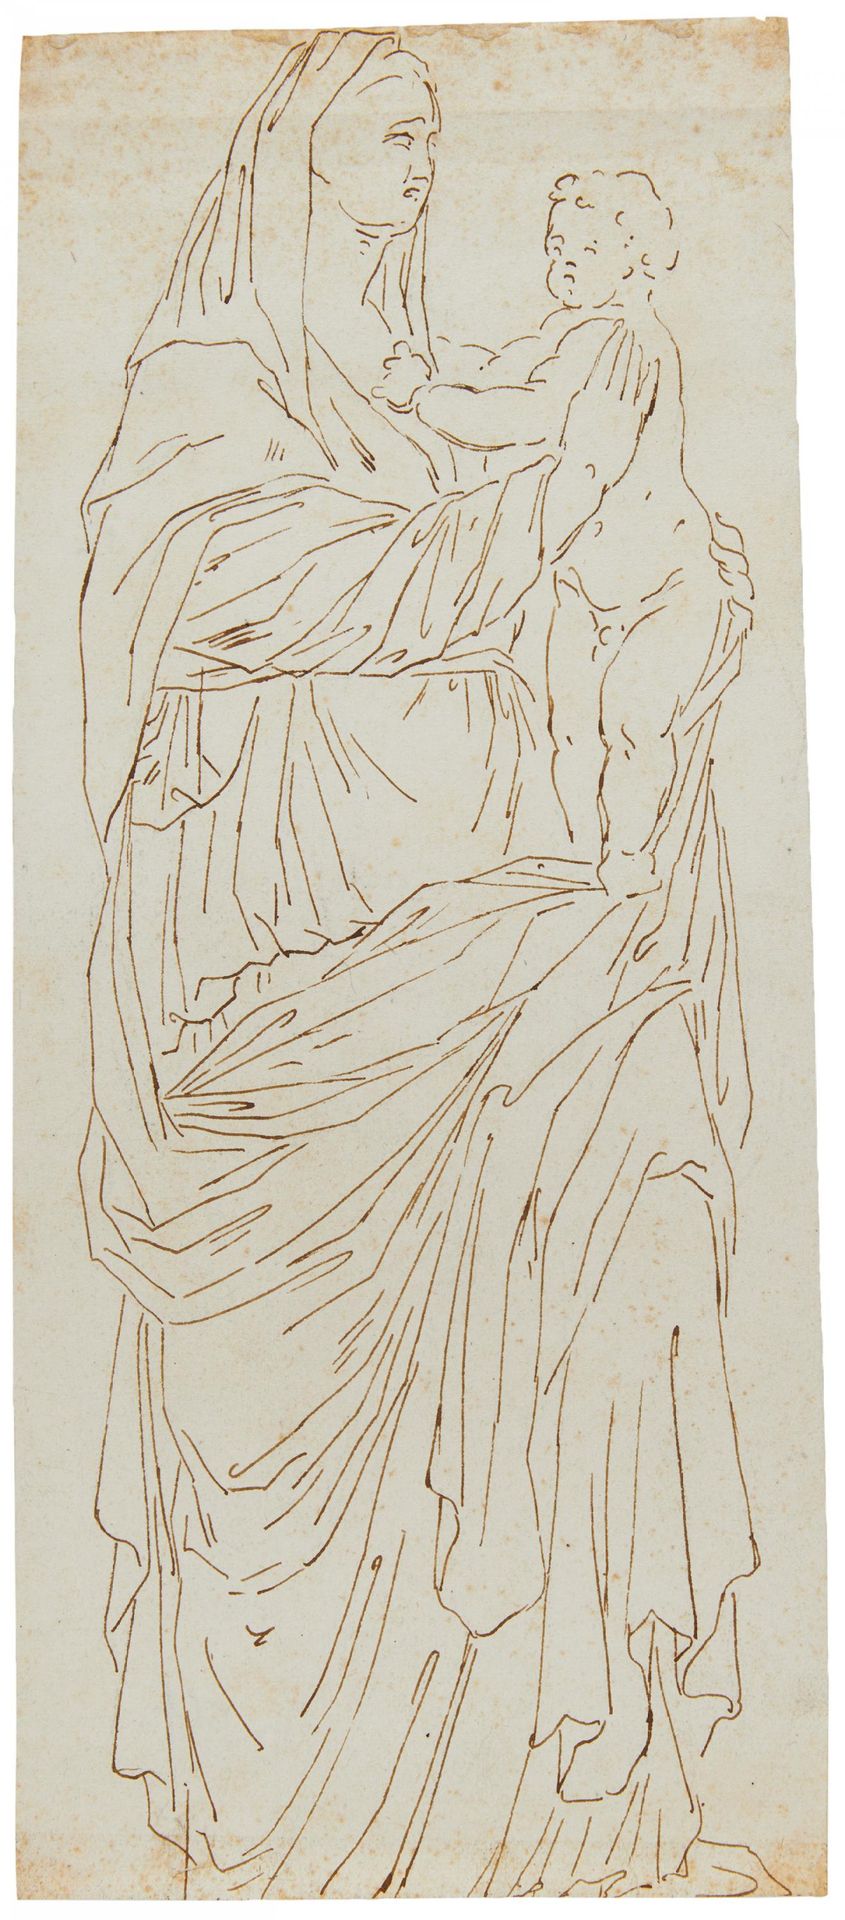 ITALIENISCHE SCHULE ESCUELA ITALIANA
Siglo XVII / XVIII.
Título: Virgen con el N&hellip;